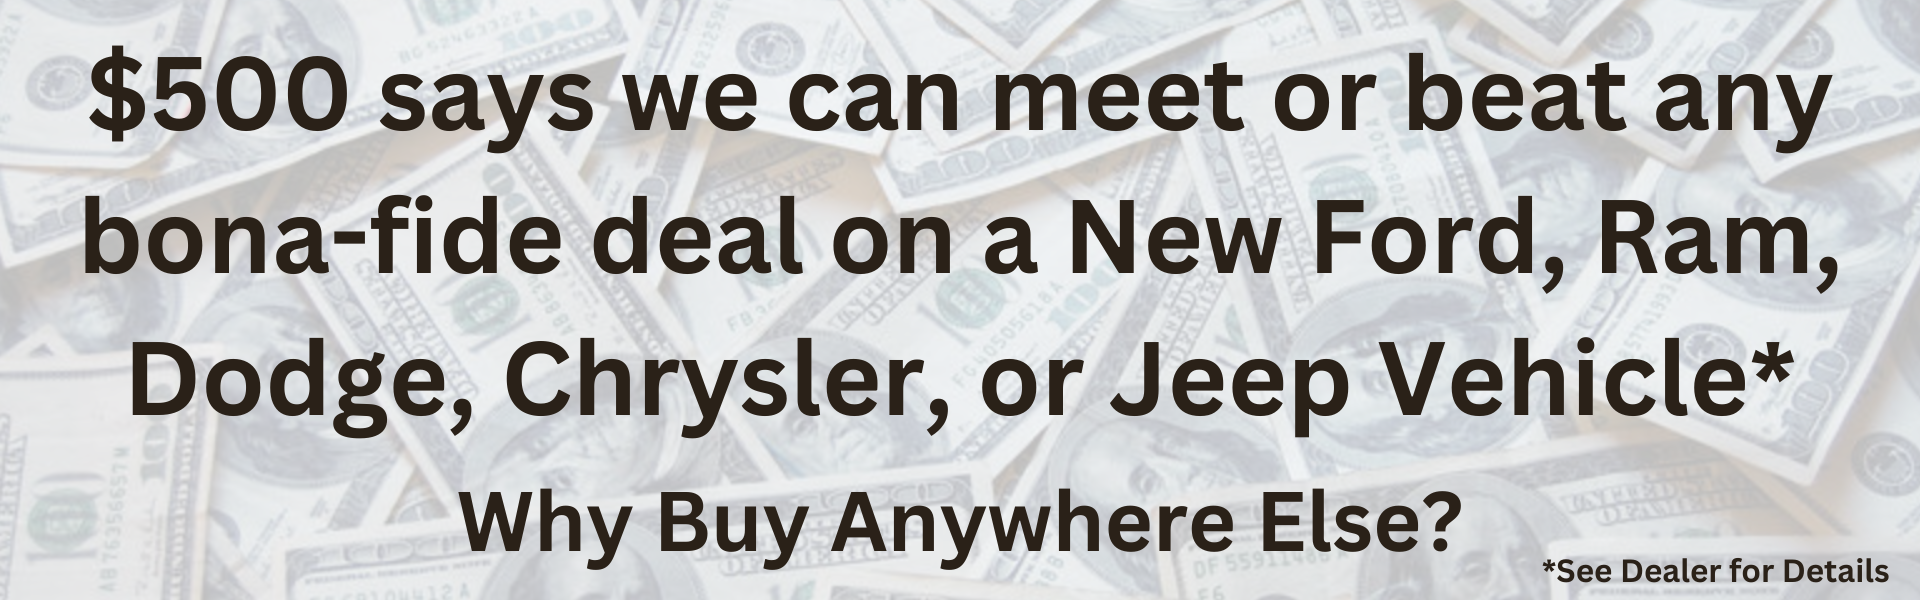 $500 Meet or beat new car deal